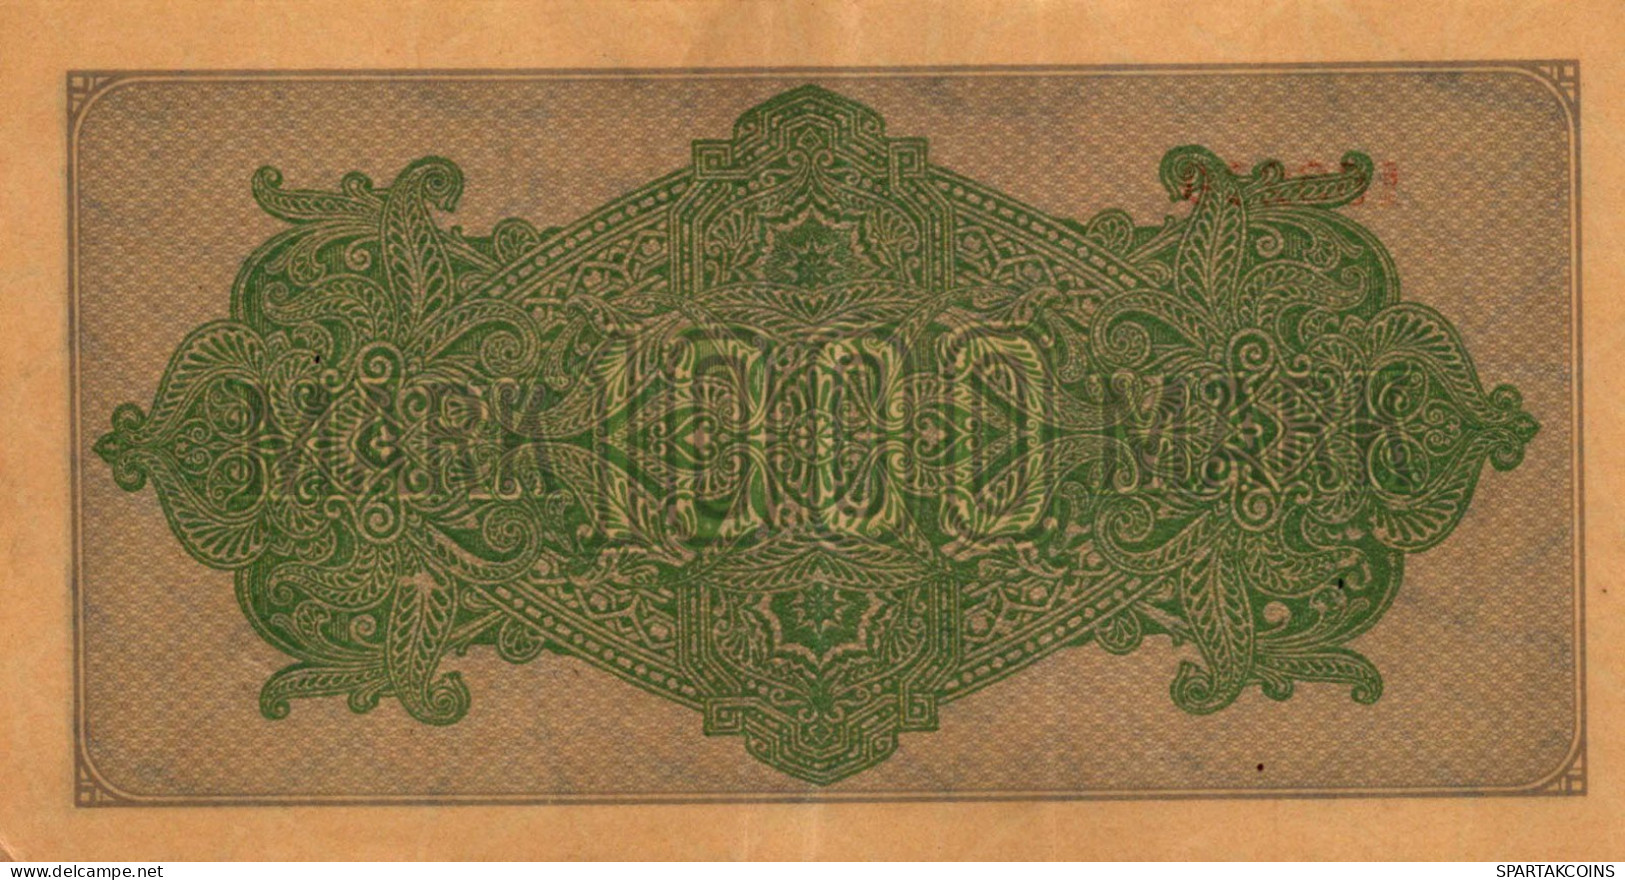 1000 MARK 1922 Stadt BERLIN DEUTSCHLAND Papiergeld Banknote #PL464 - [11] Emisiones Locales